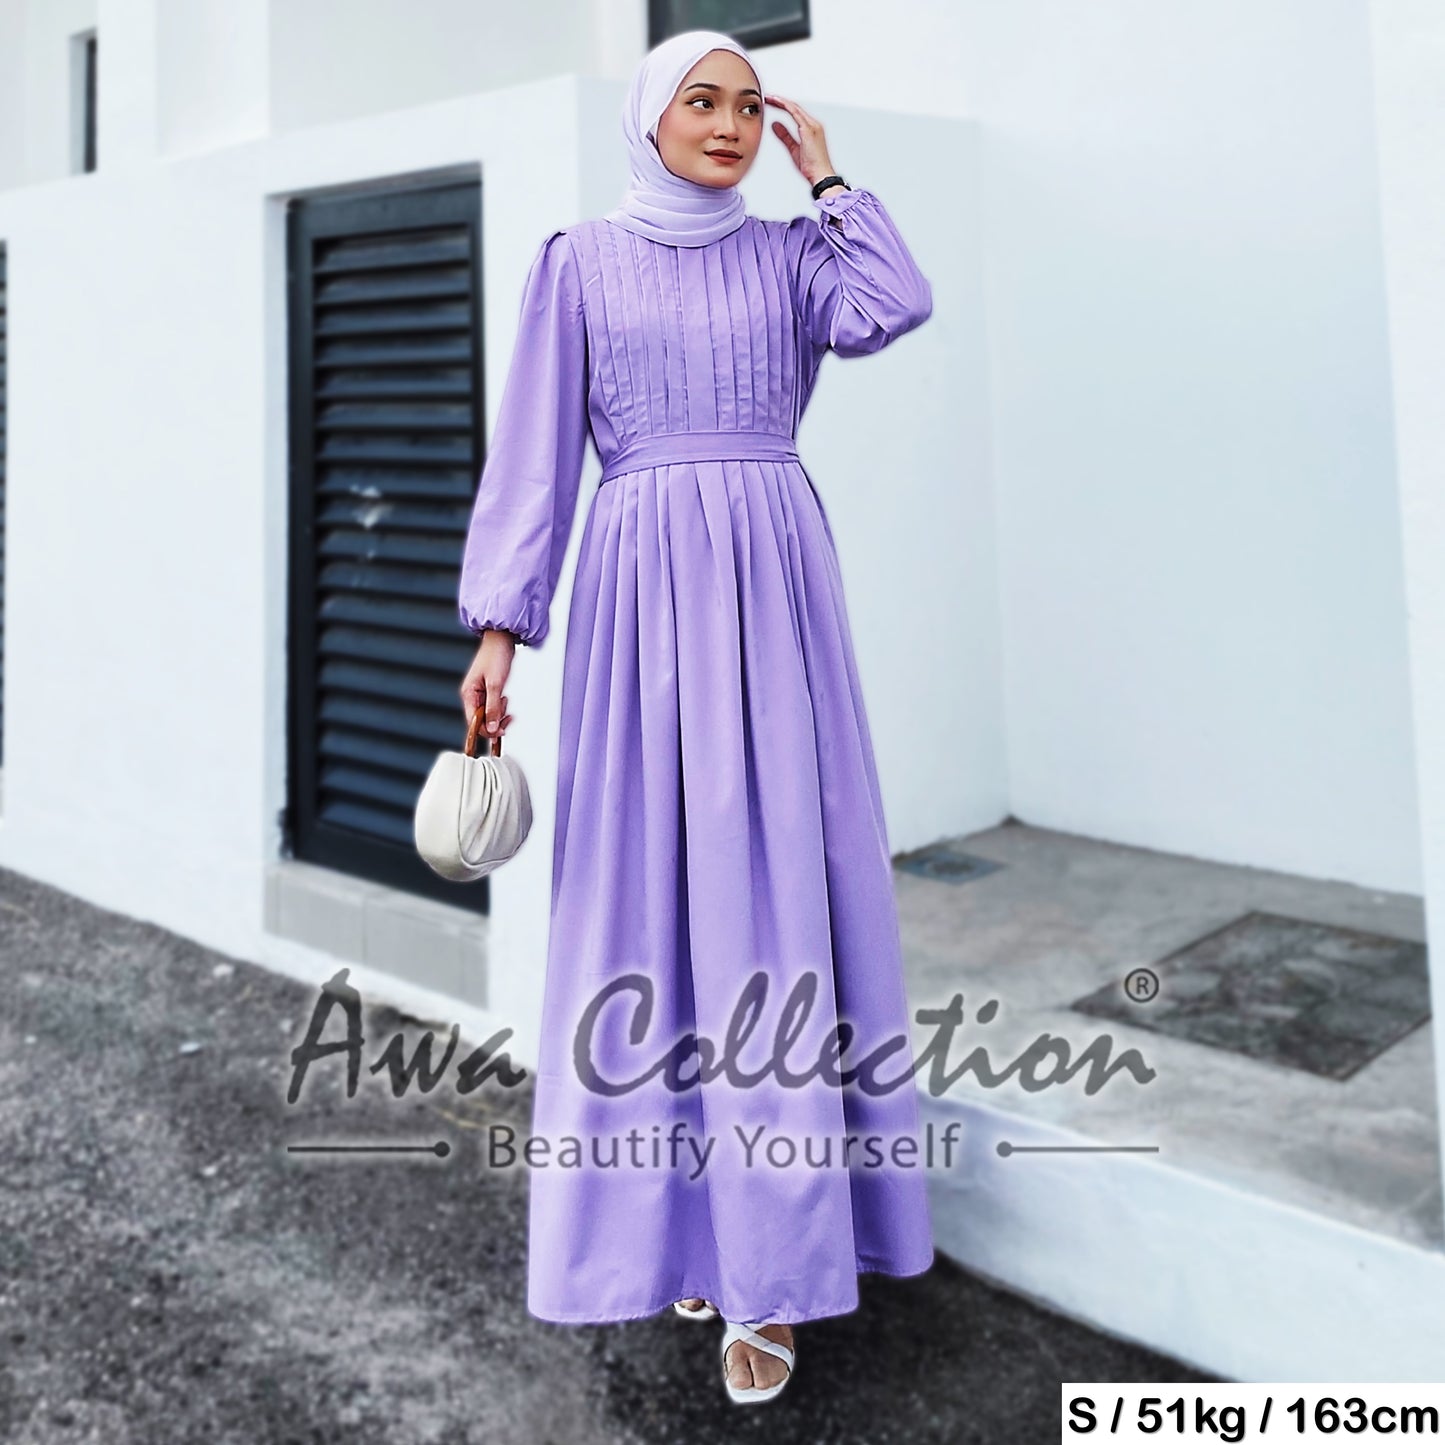 LALEESA Awa Collection DA127162 DRESS SAEEDA Dress Muslimah Dress Women Dress Baju Muslimah Baju Raya 2024